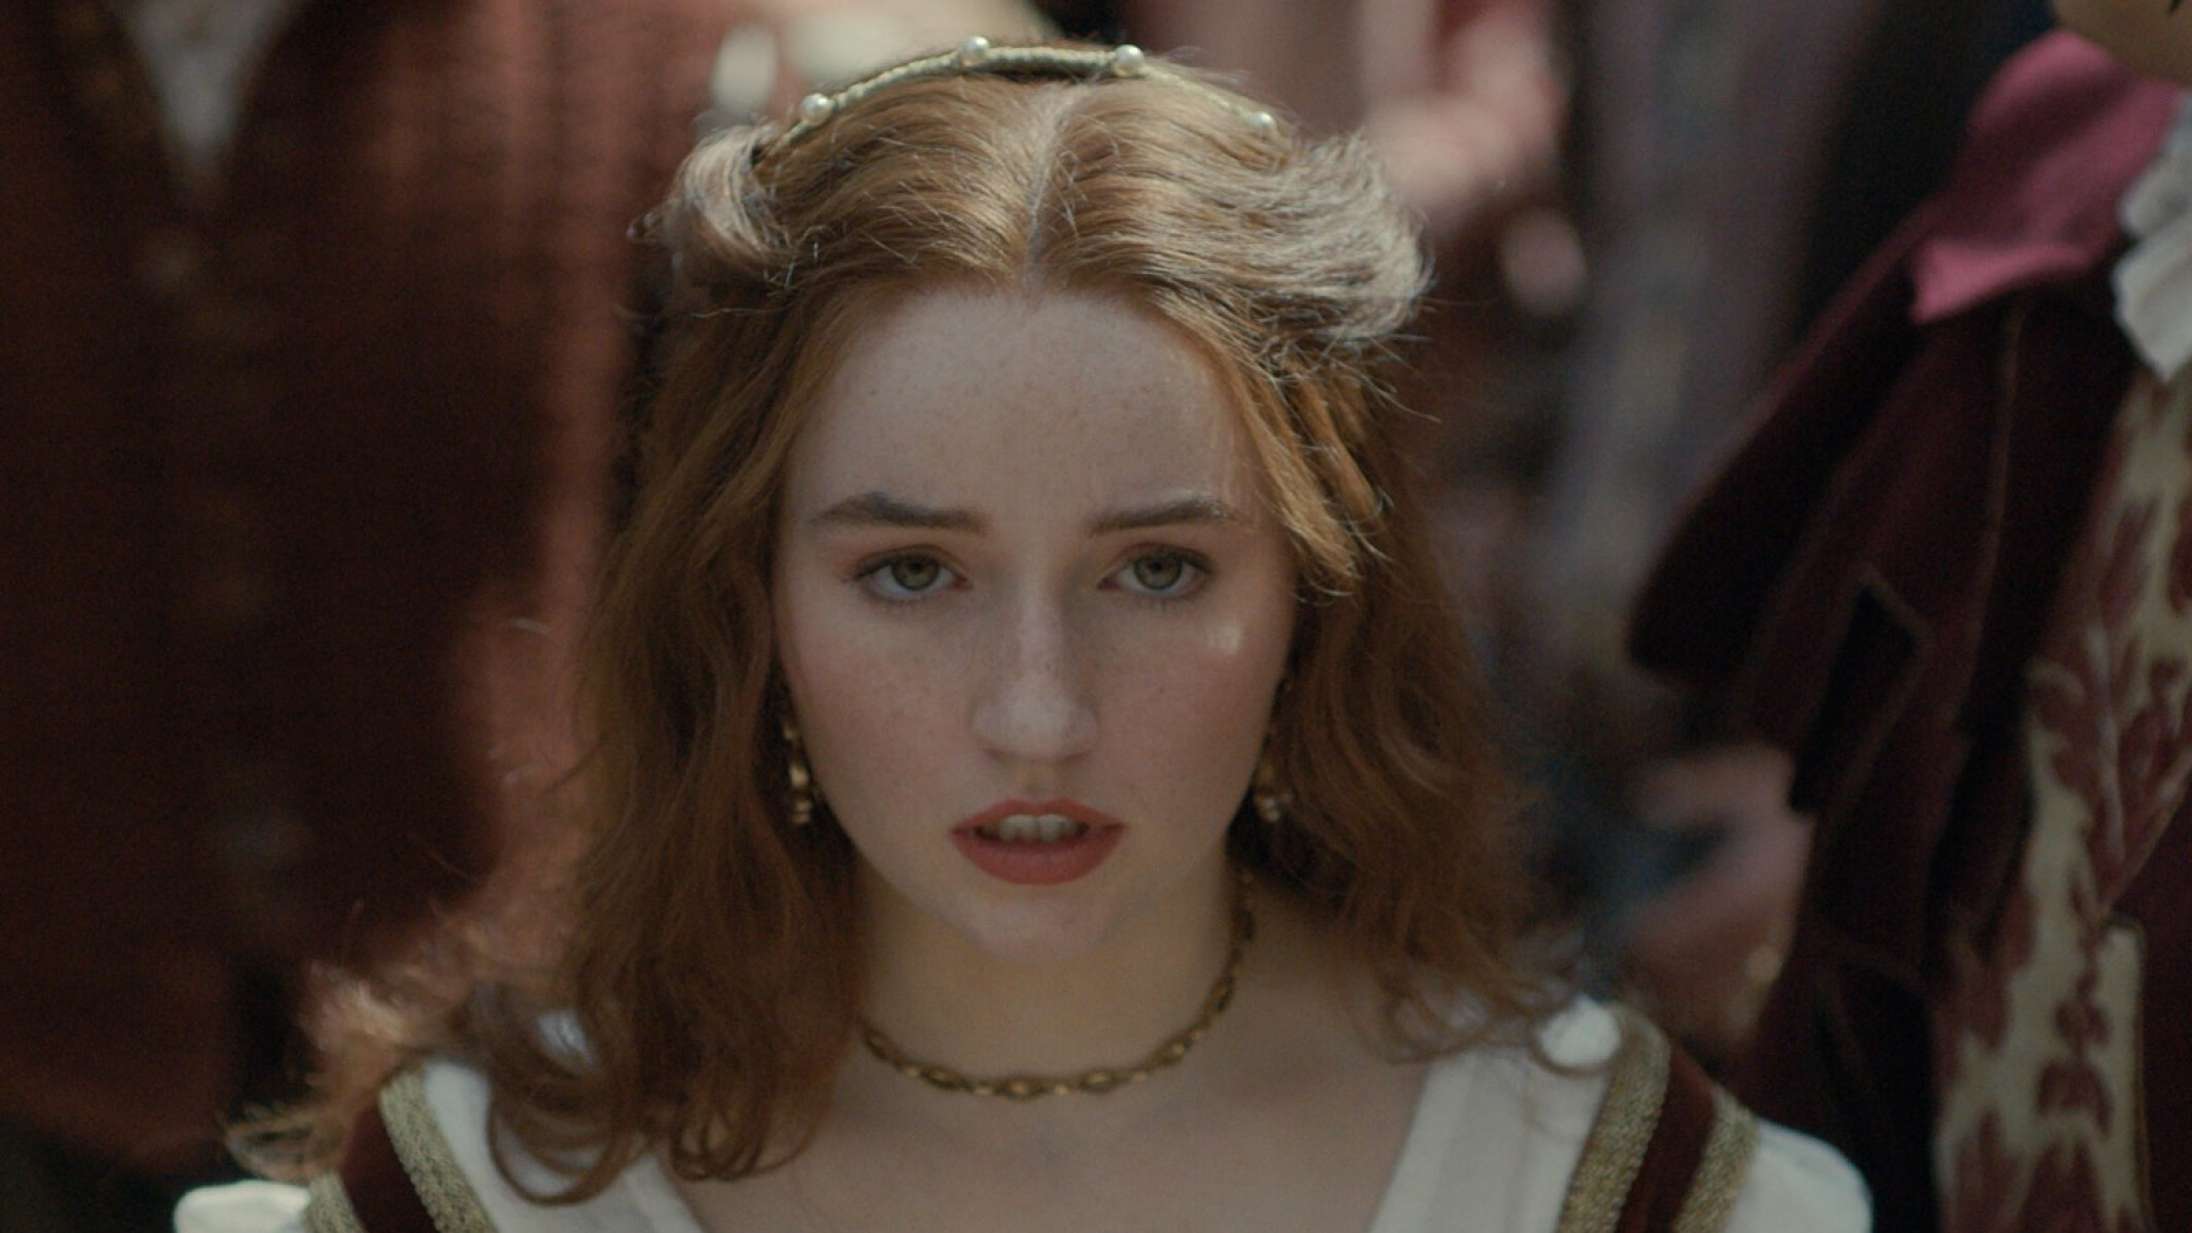 ’Rosaline’: Kaitlyn Dever stråler i moderne Shakespeare-film, men Romeos oversete ex fortjener bedre